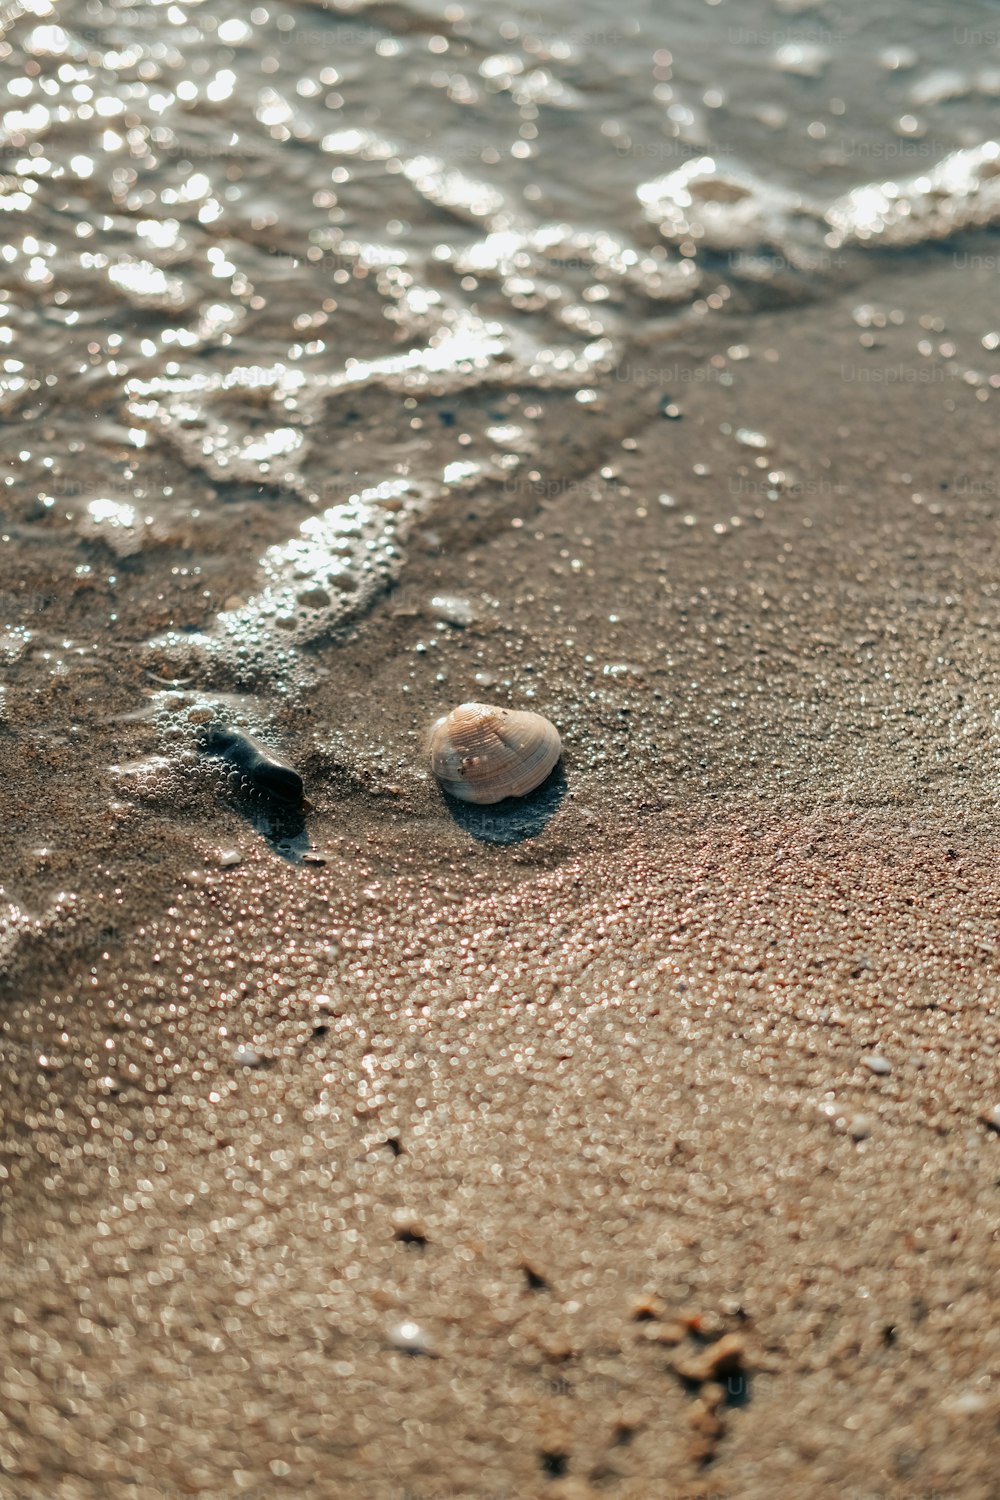 바다 옆 모래 사장 위에 앉아 있는 공